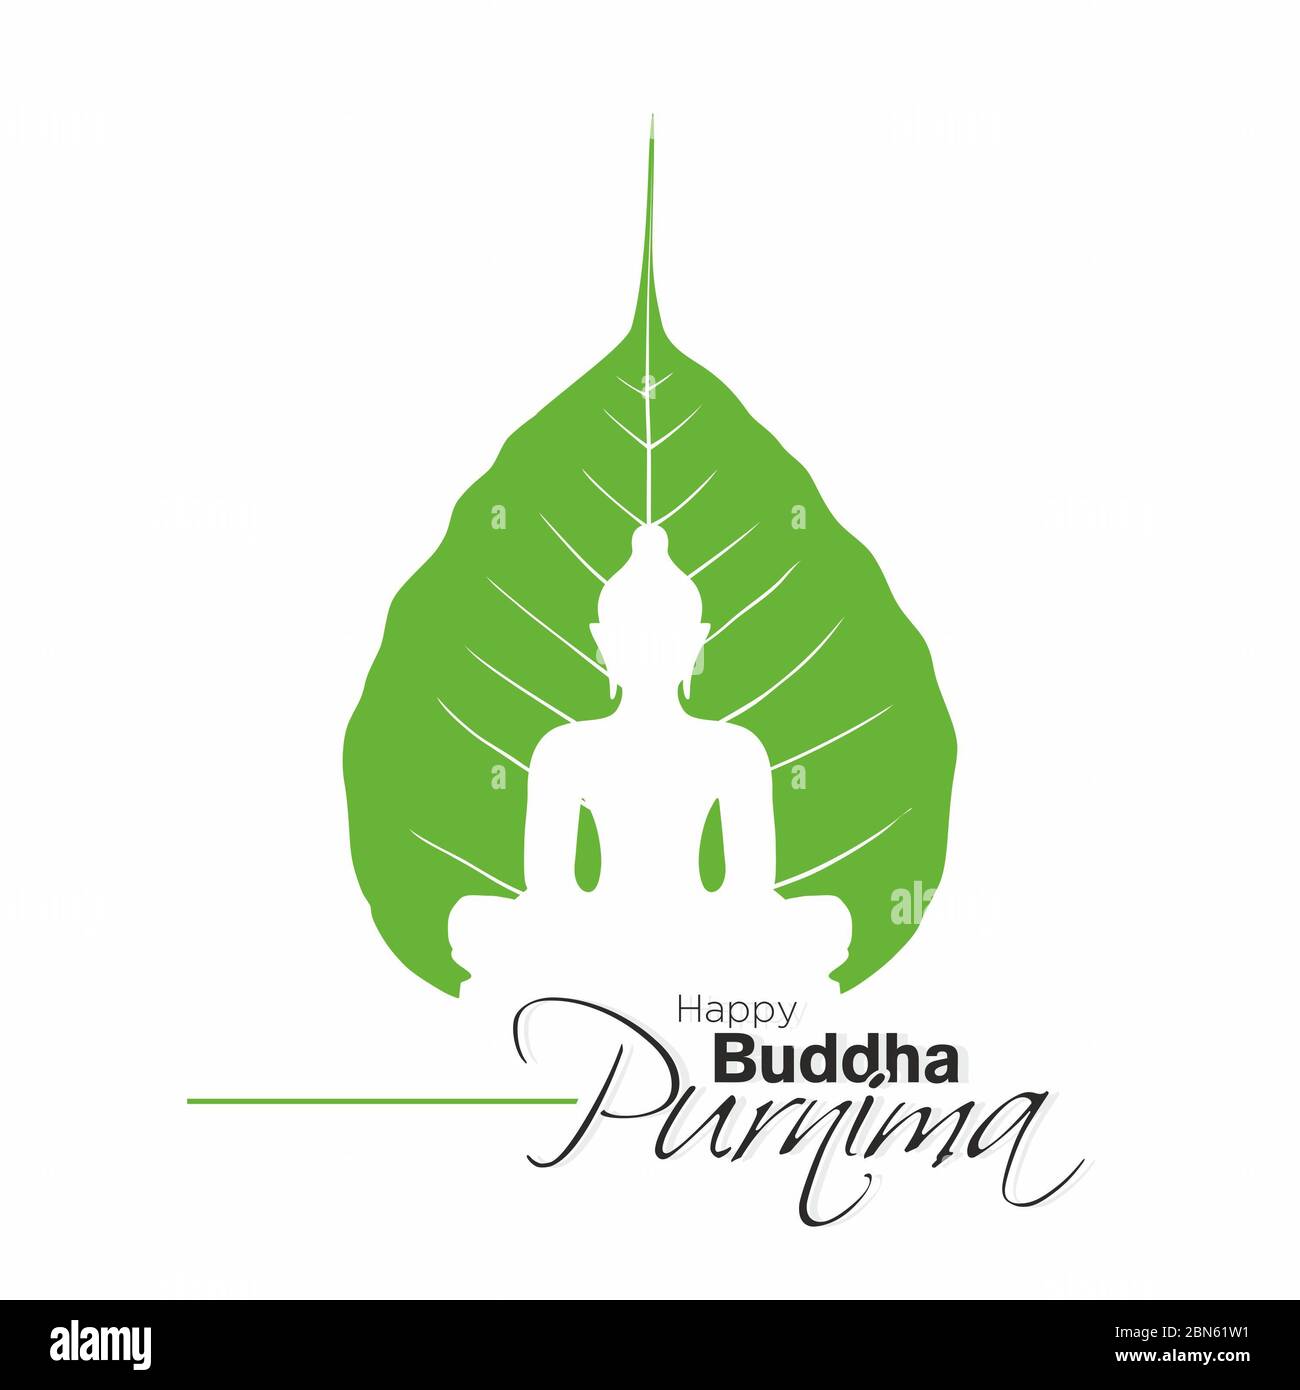 Lord Buddha Birthday Banner - Happy Buddha Purnima Calligraphy Stock Photo